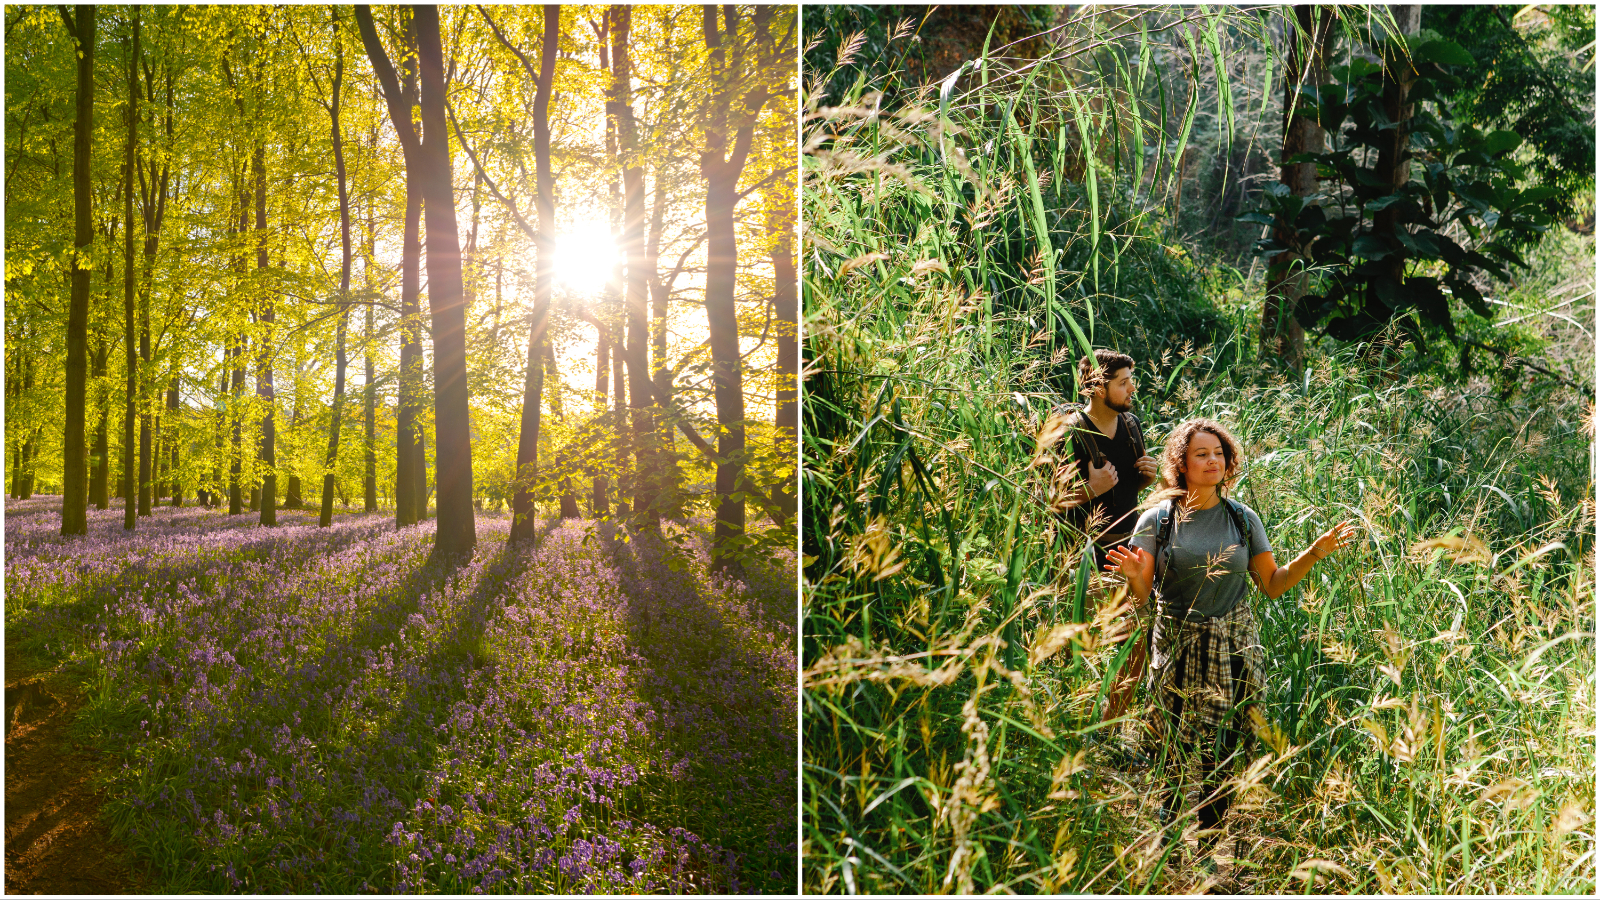 Kako pobijediti proljetni umor? Pronašli smo lijek šetajući ovim predivnim šumama u okolici Zagreba